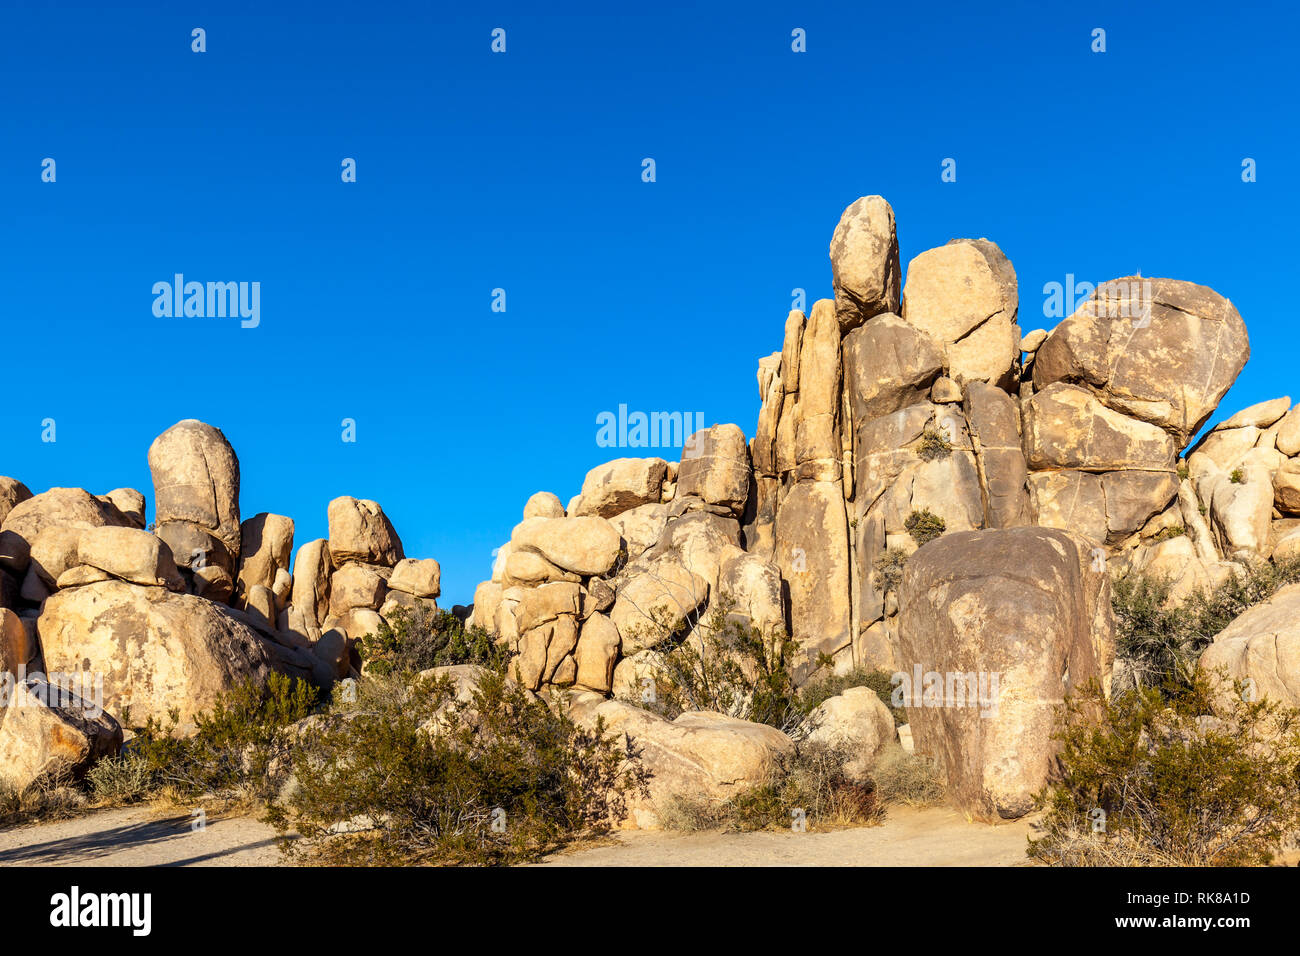 Rocks in the Joshua Tree National Park, California, USA Stock Photo